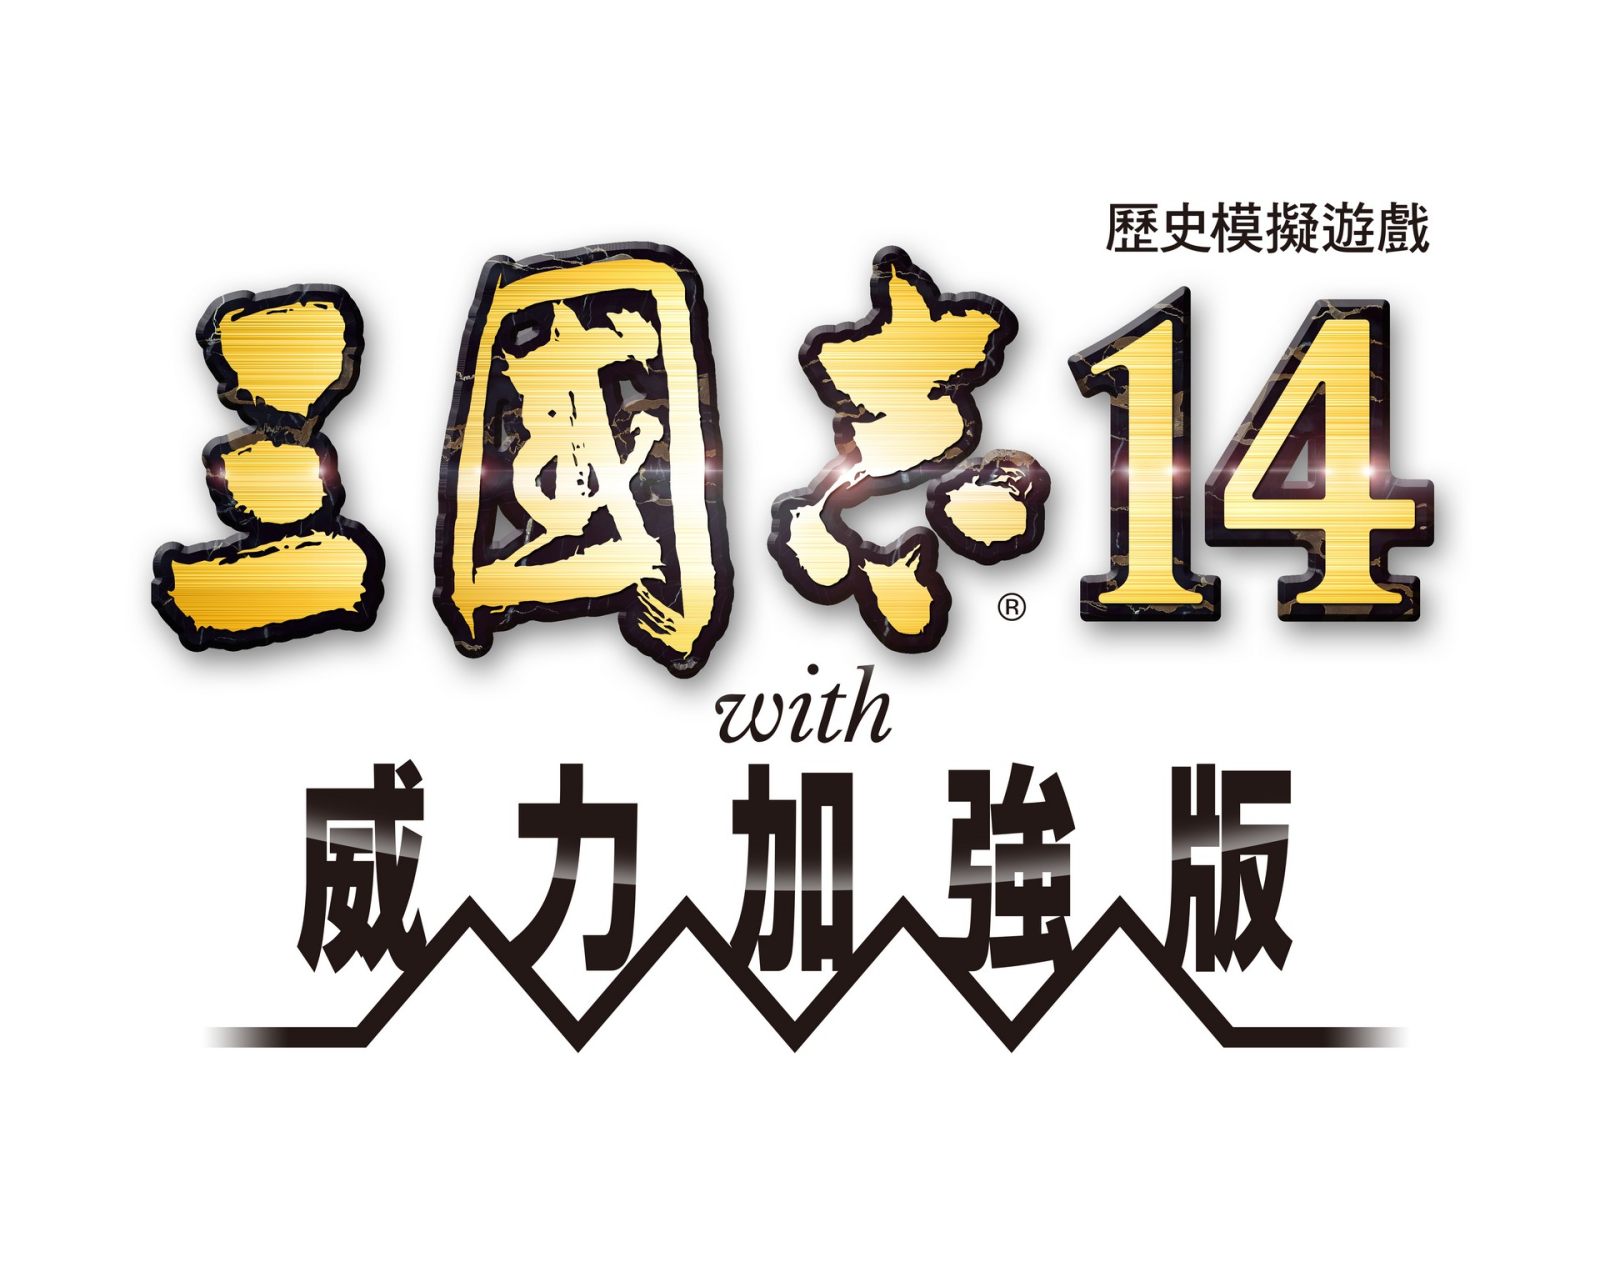 《三国志14 with 威力加强版》将于12月10日正式发售